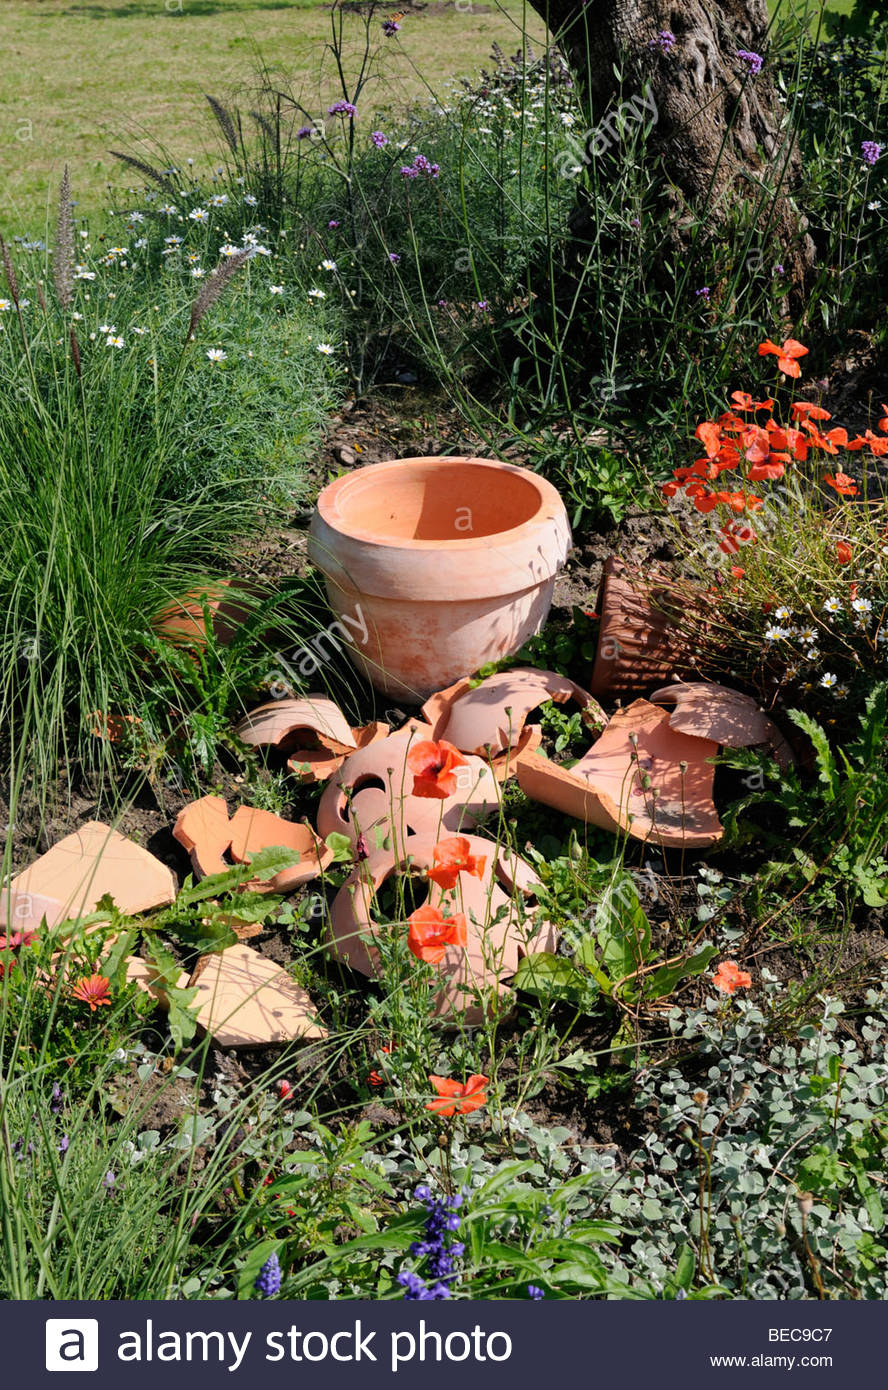 Gartendekoration Schön Broken Pot Garden Stock S & Broken Pot Garden Stock